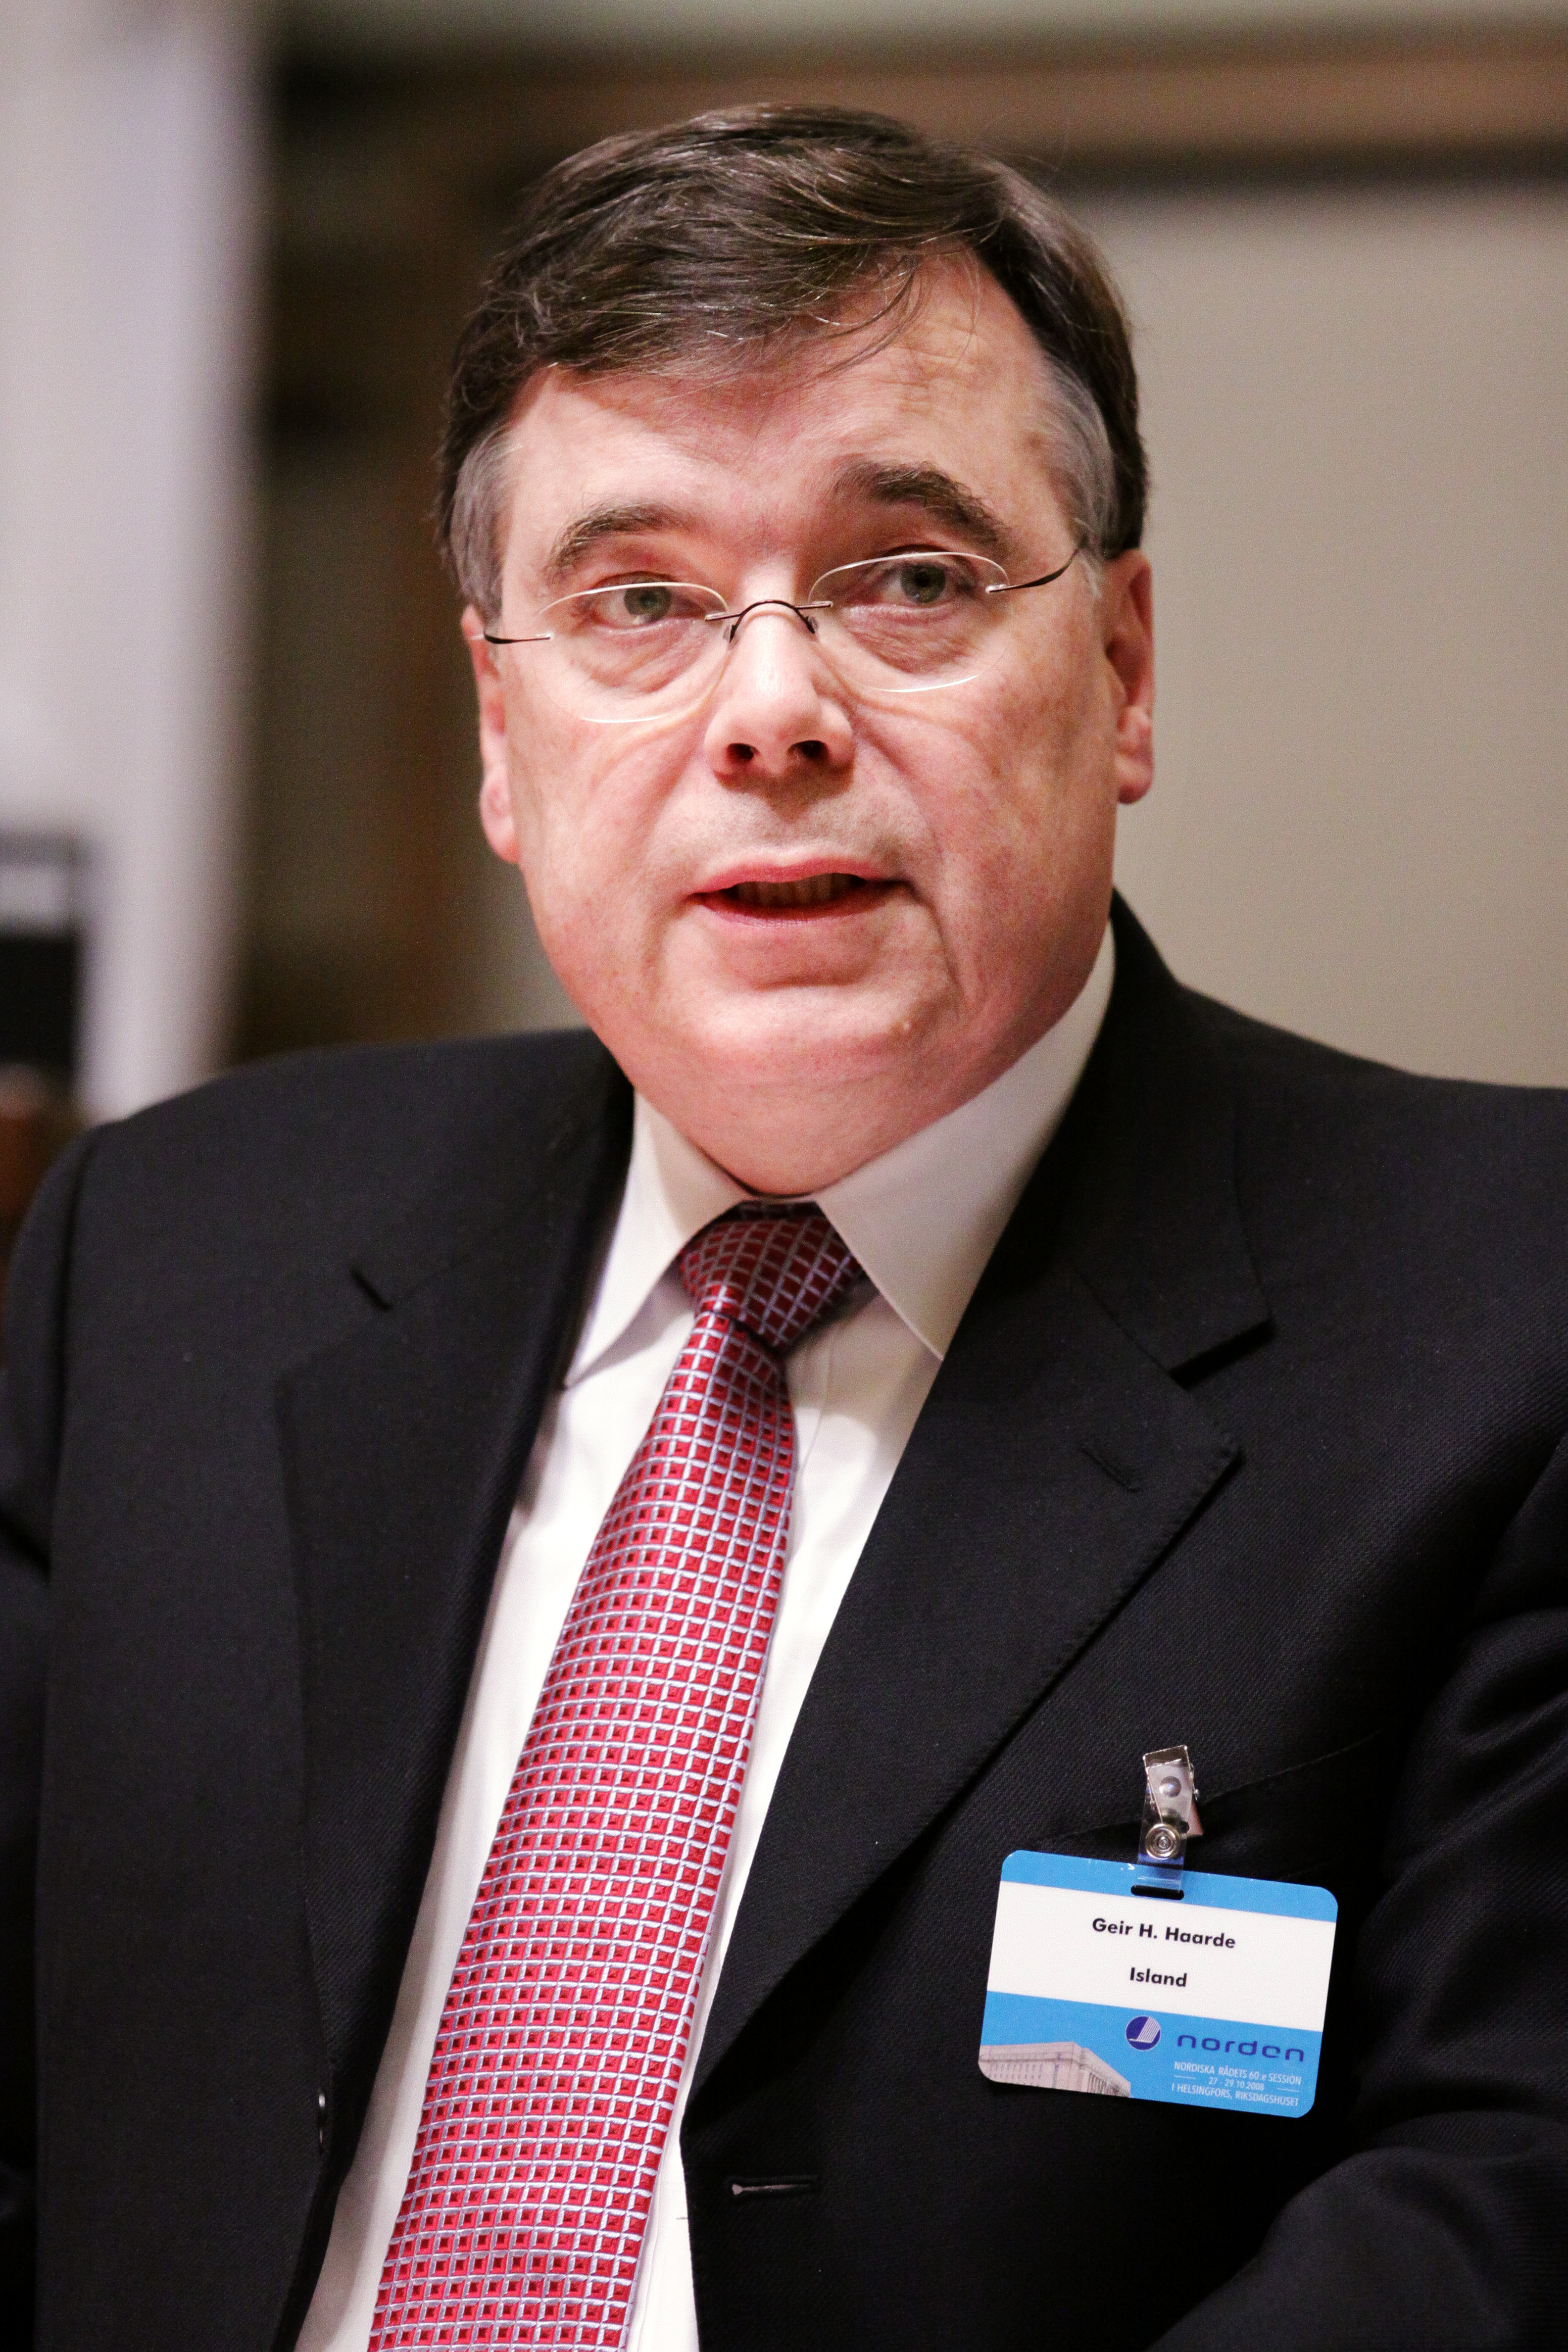 Islands statsminister Geir H Haarde vid Nordiska Radets session i Helsingfors 2008-10-27 (1)